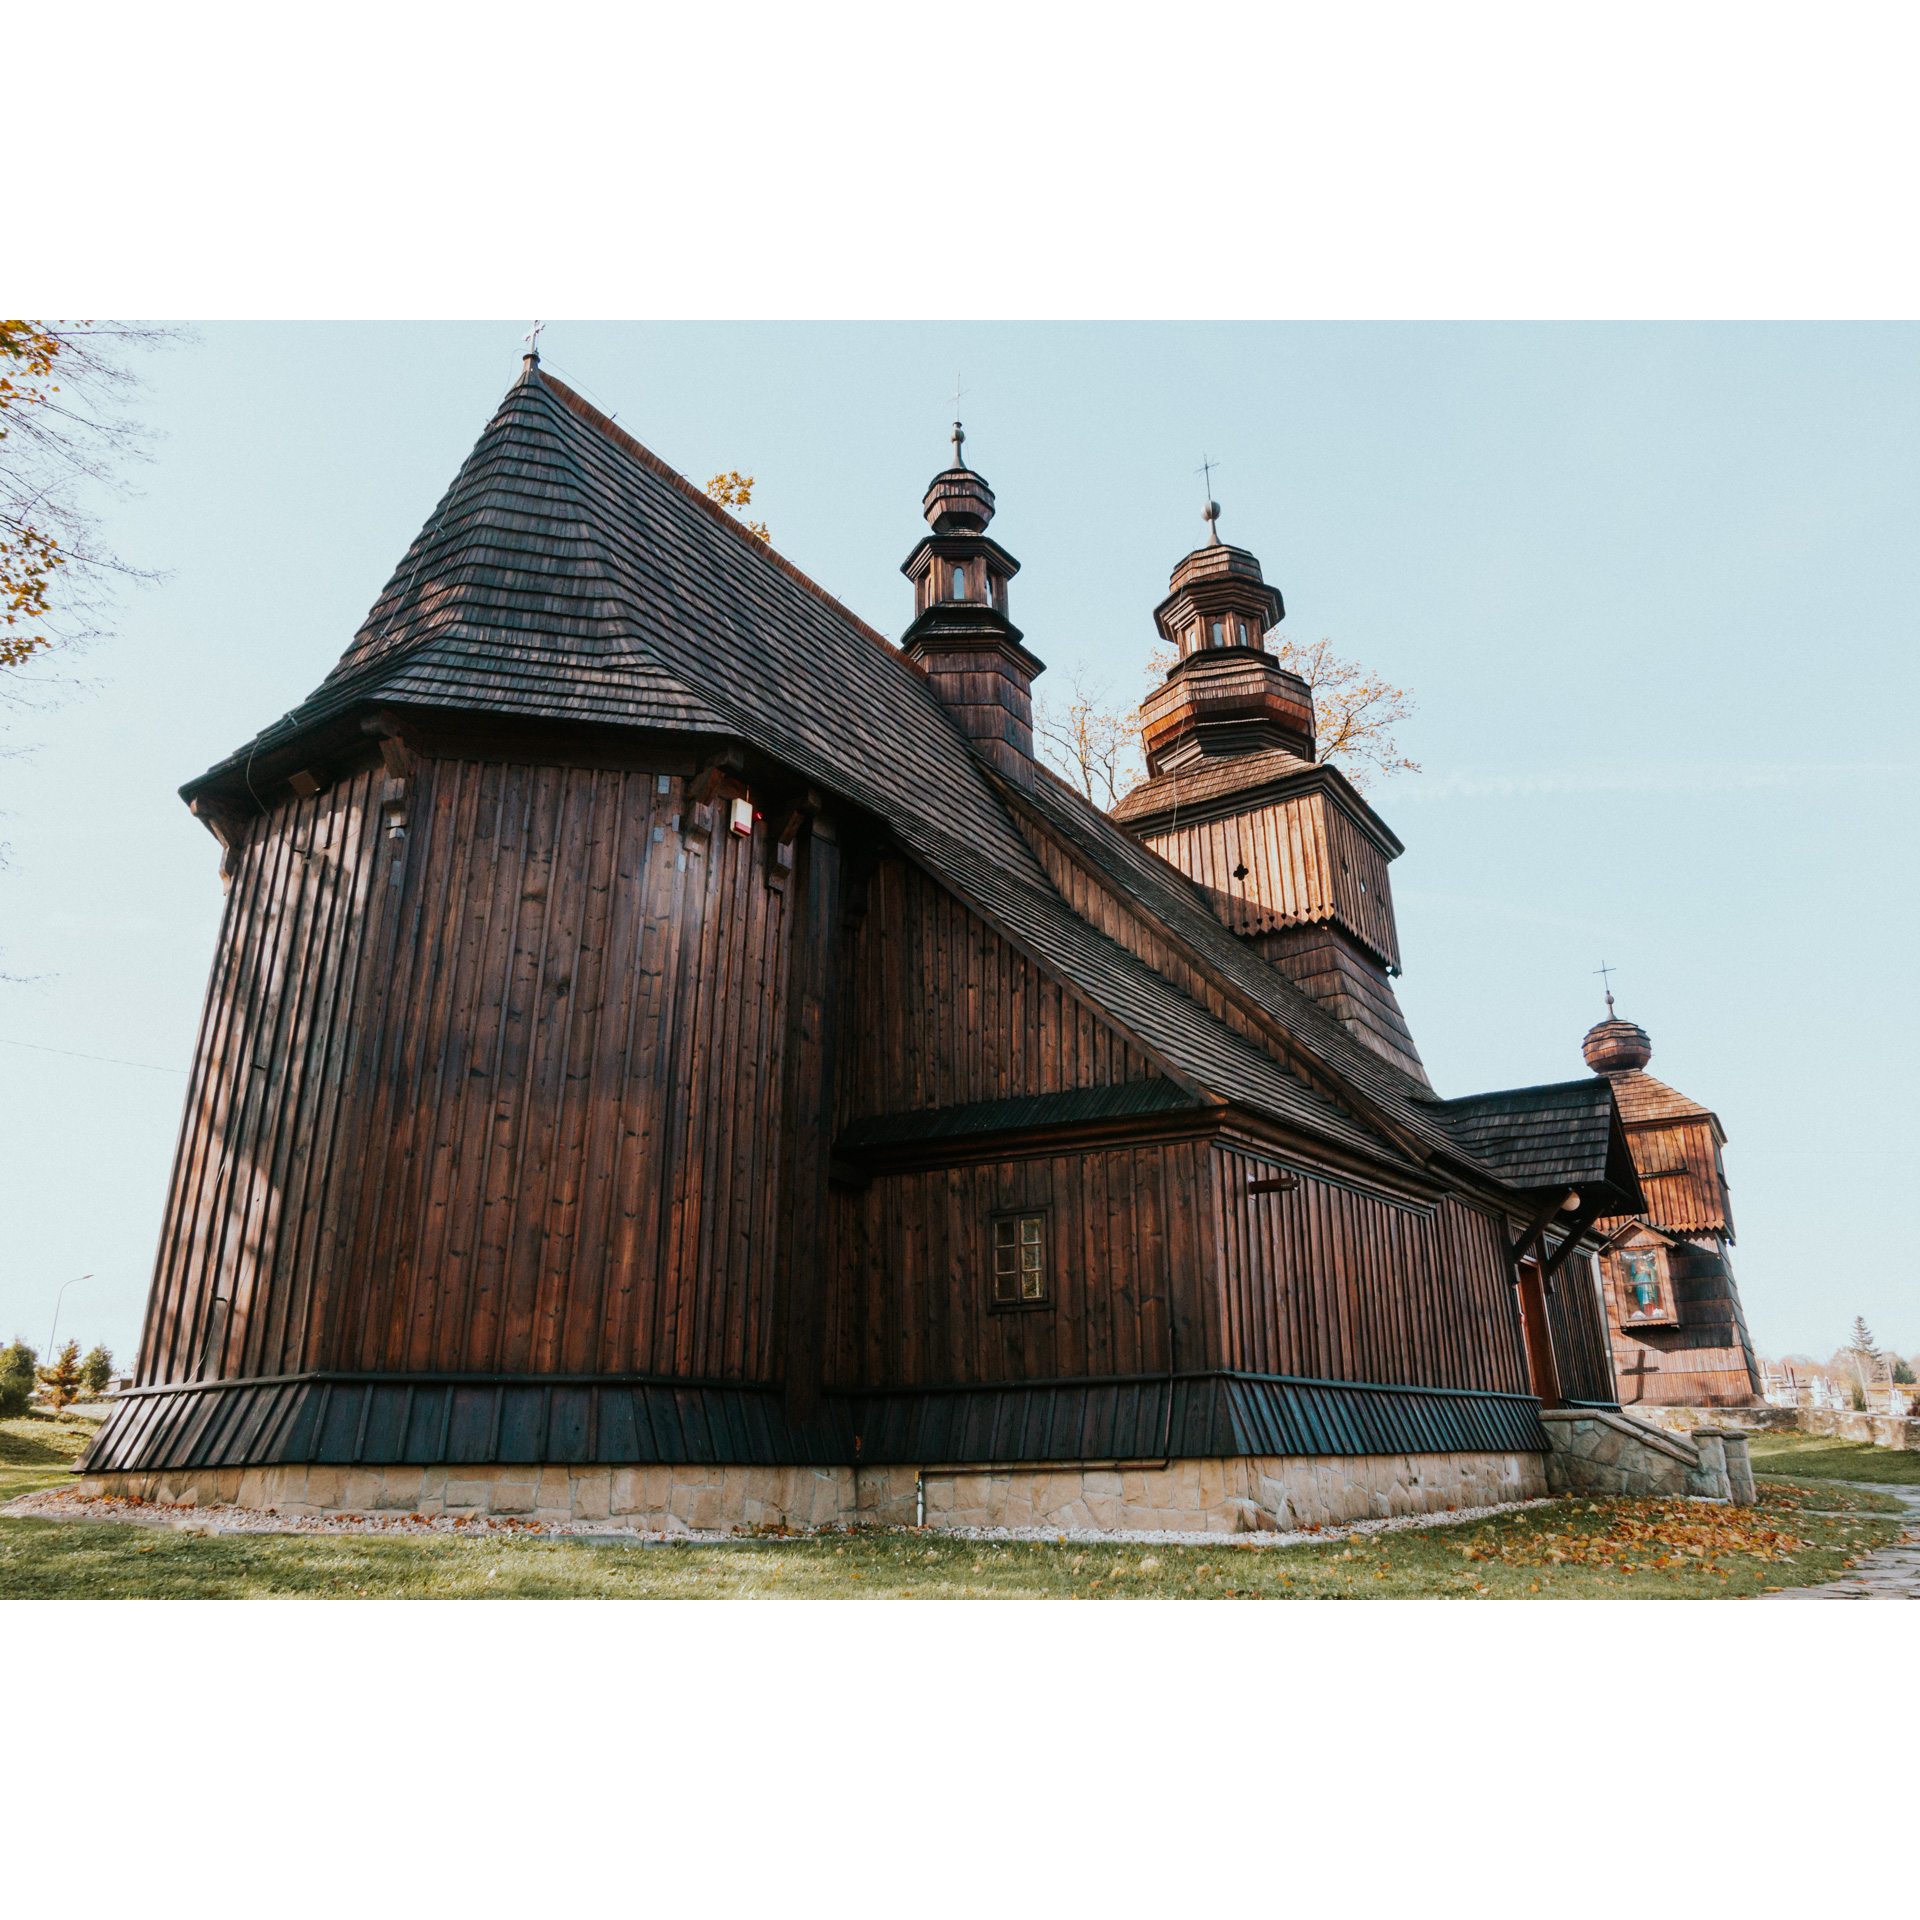 Ciemnobrązowy, drewniany kościół ze strzelistym, czarnym dachem i dwoma wieżyczkami zakończonymi kopułkami i krzyżami